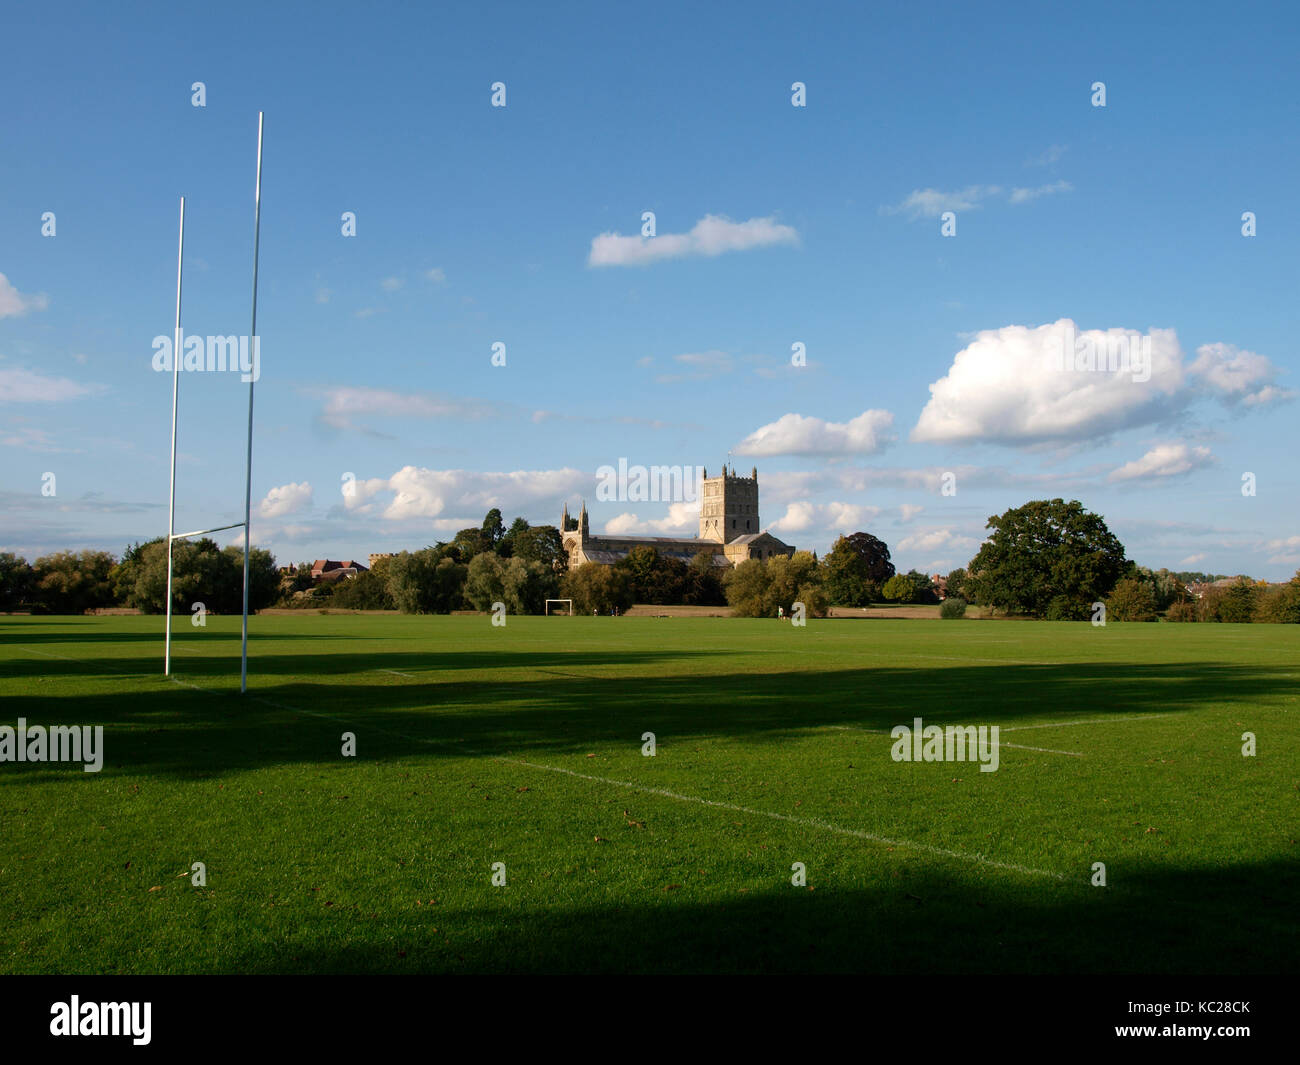 Viñedos campos de juego con la abadía de Tewkesbury detrás, Tewkesbury, Gloucestershire, Reino Unido Foto de stock